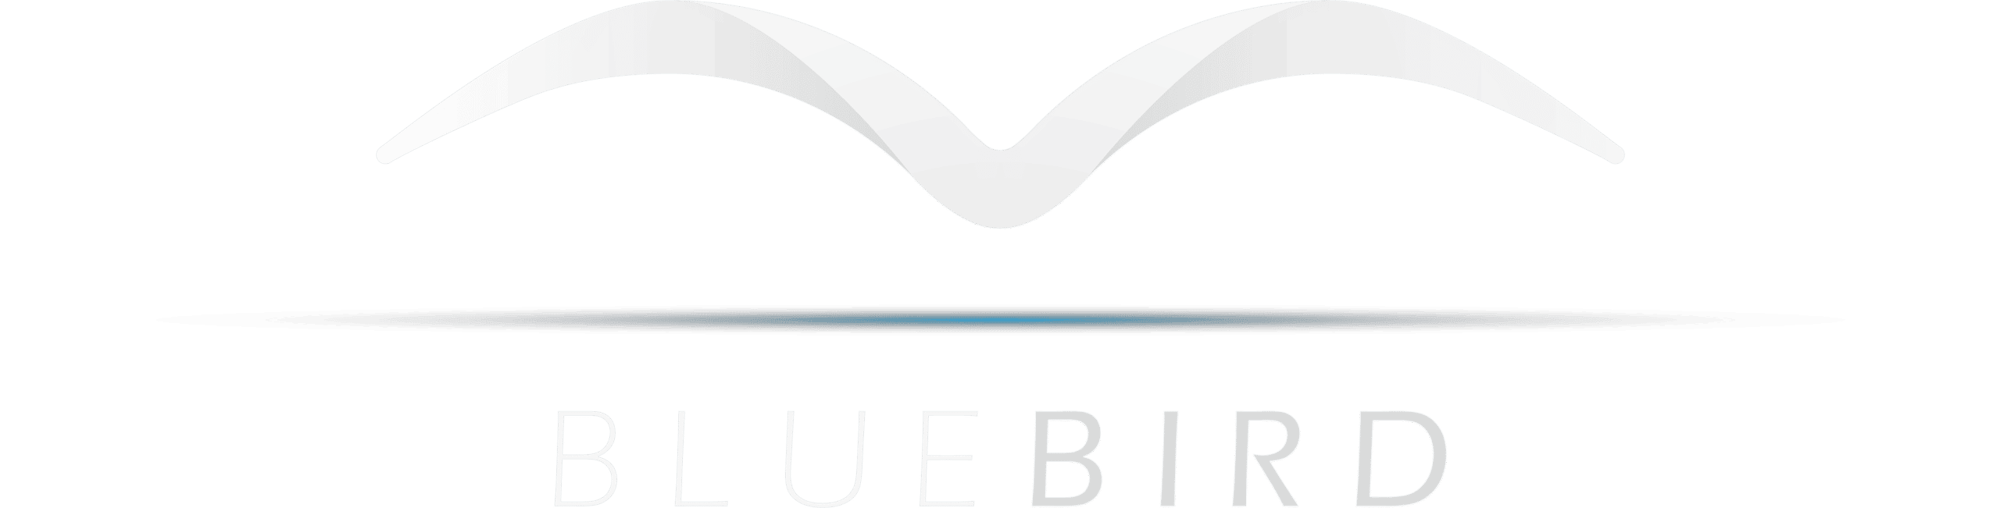 The Bluebird logo